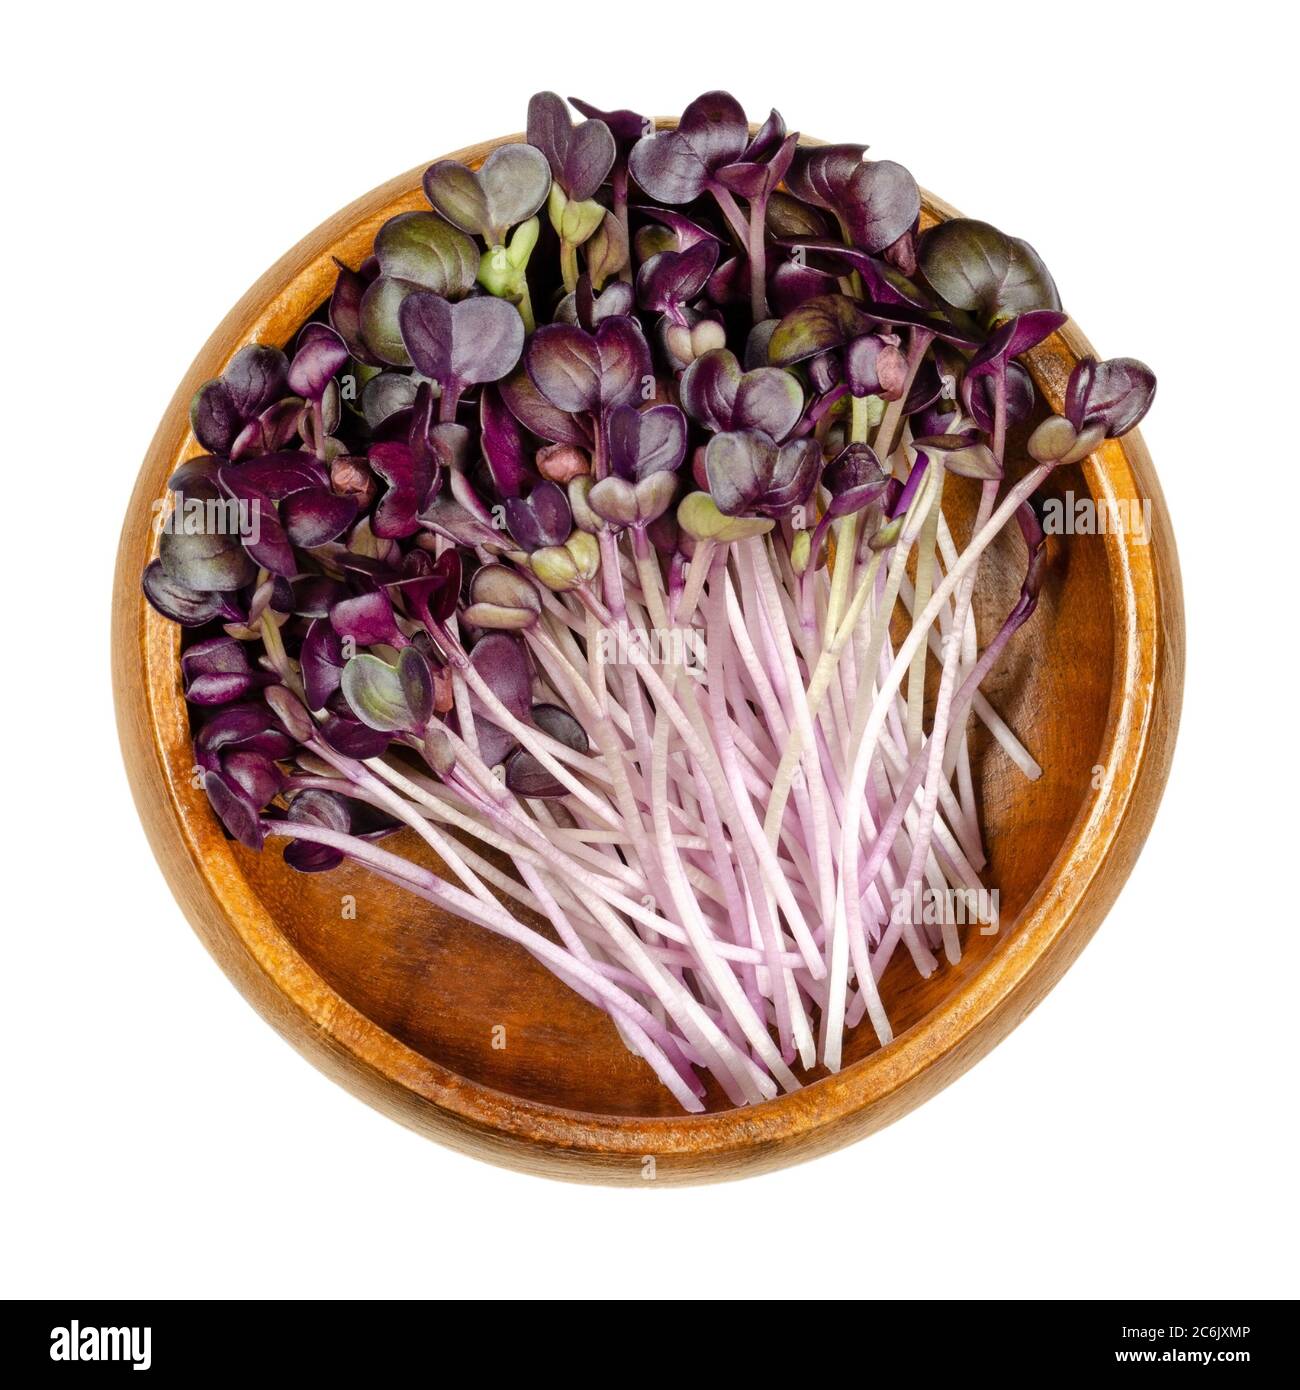 Semis de radis avec feuilles rouges dans un bol en bois. Pousses de Raphanus sativus, un légume de racine comestible. Jeunes plantes et microgreen. Isolé sur blanc Banque D'Images